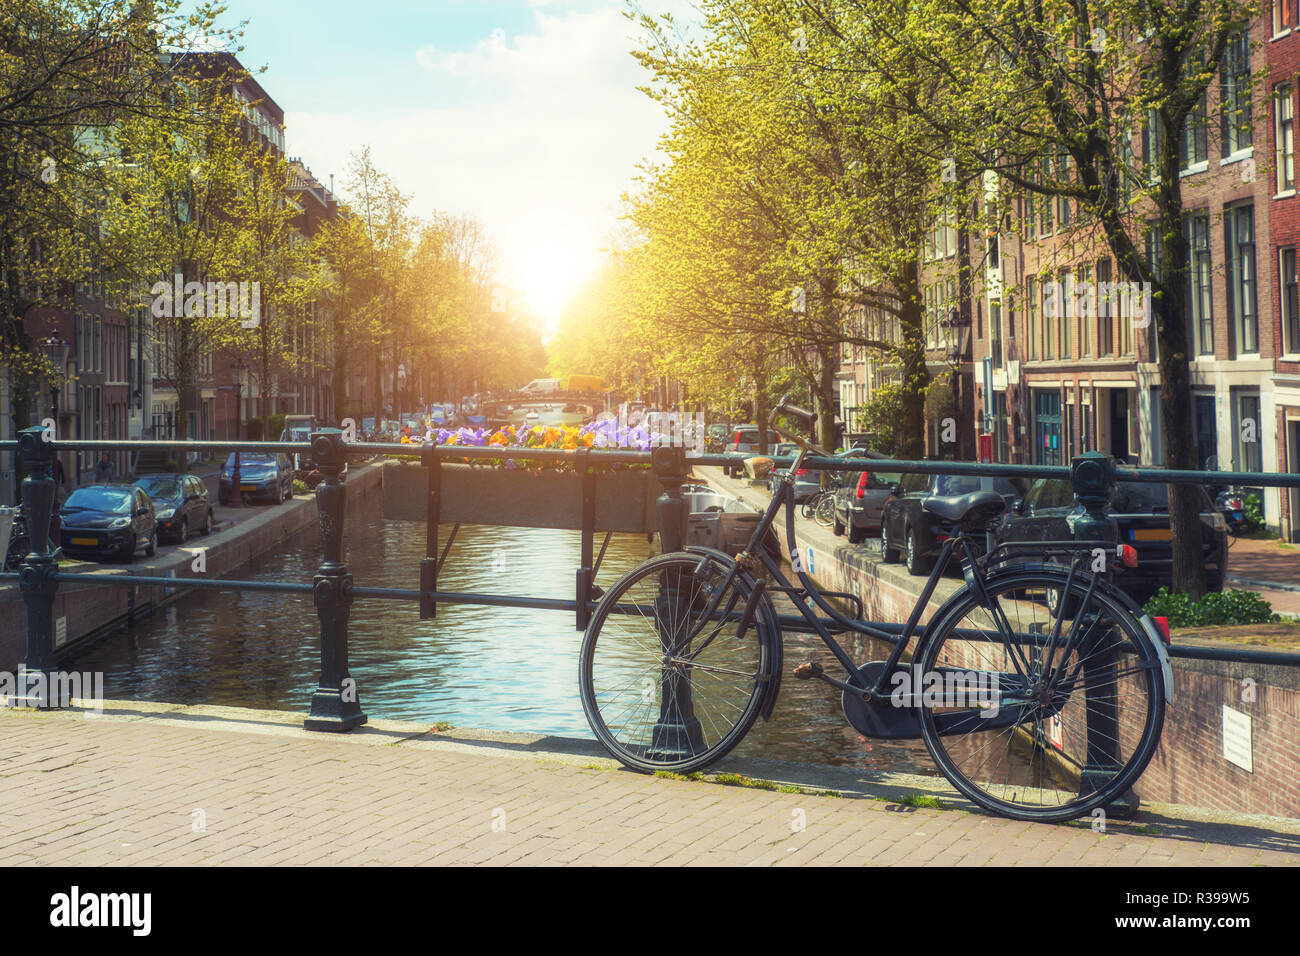 Fahrrad auf der Brücke in und Alamy Niederlande Stockfotografie Häuser Amsterdam, Amsterdam traditionelle mit Gracht Niederlande in 